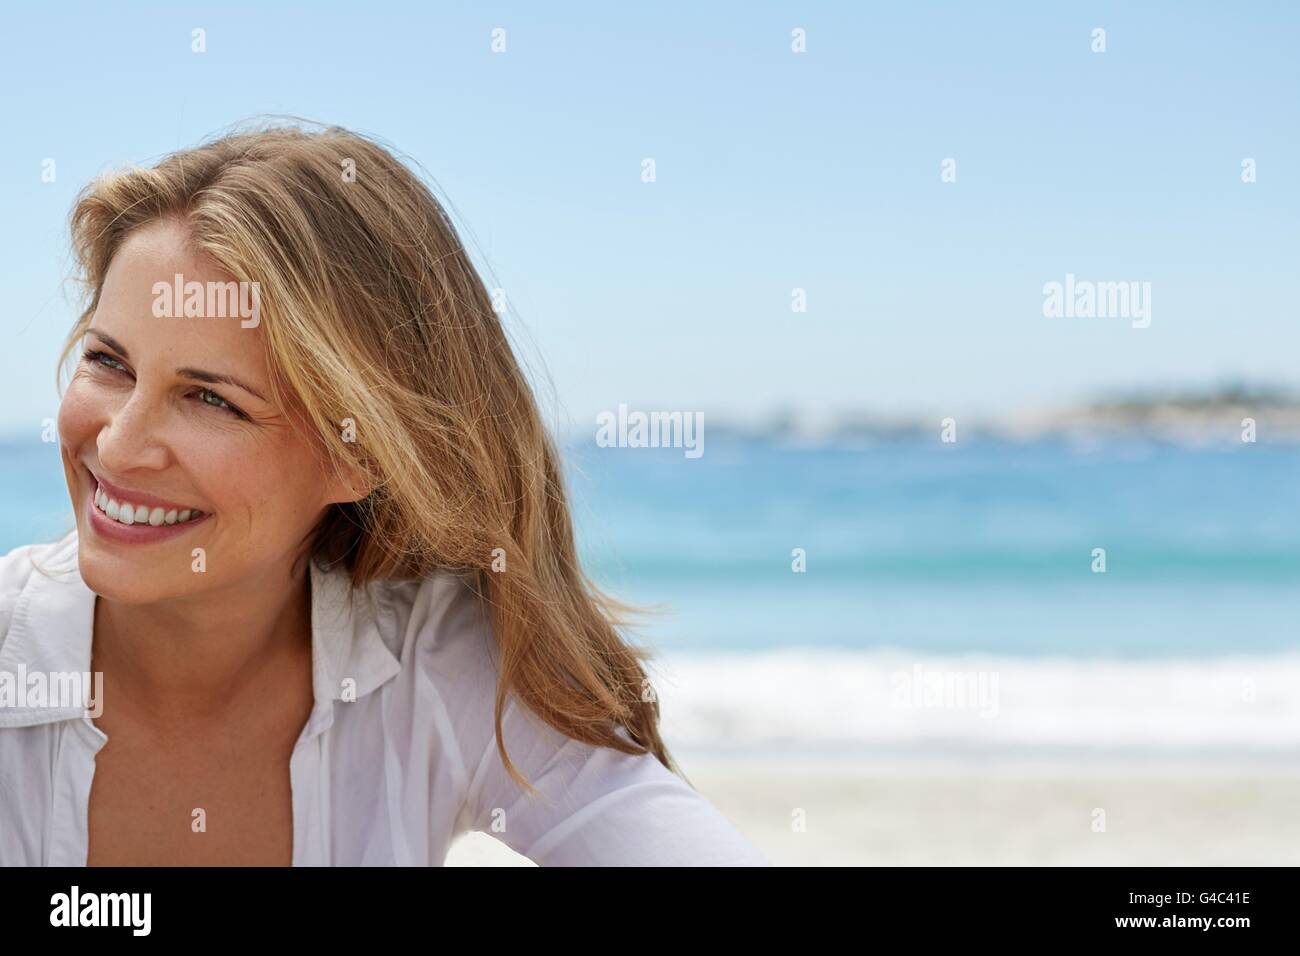 Parution du modèle. Jeune femme aux cheveux blonds smiling, portrait. Banque D'Images